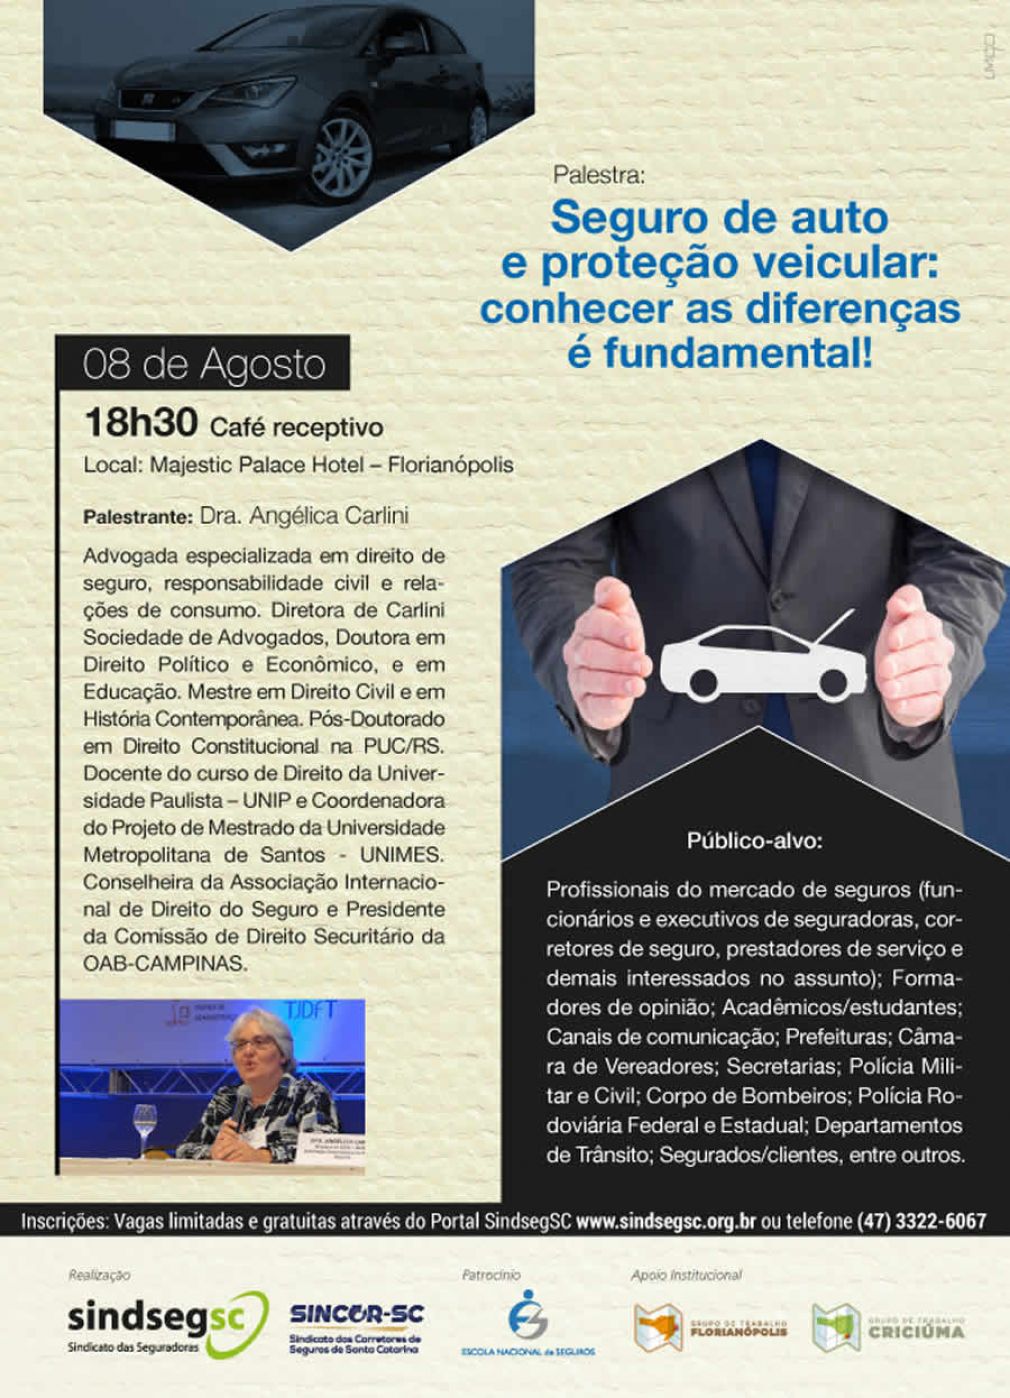 Inscreva-se para a palestra com Angélica Carlini em Florianópolis!